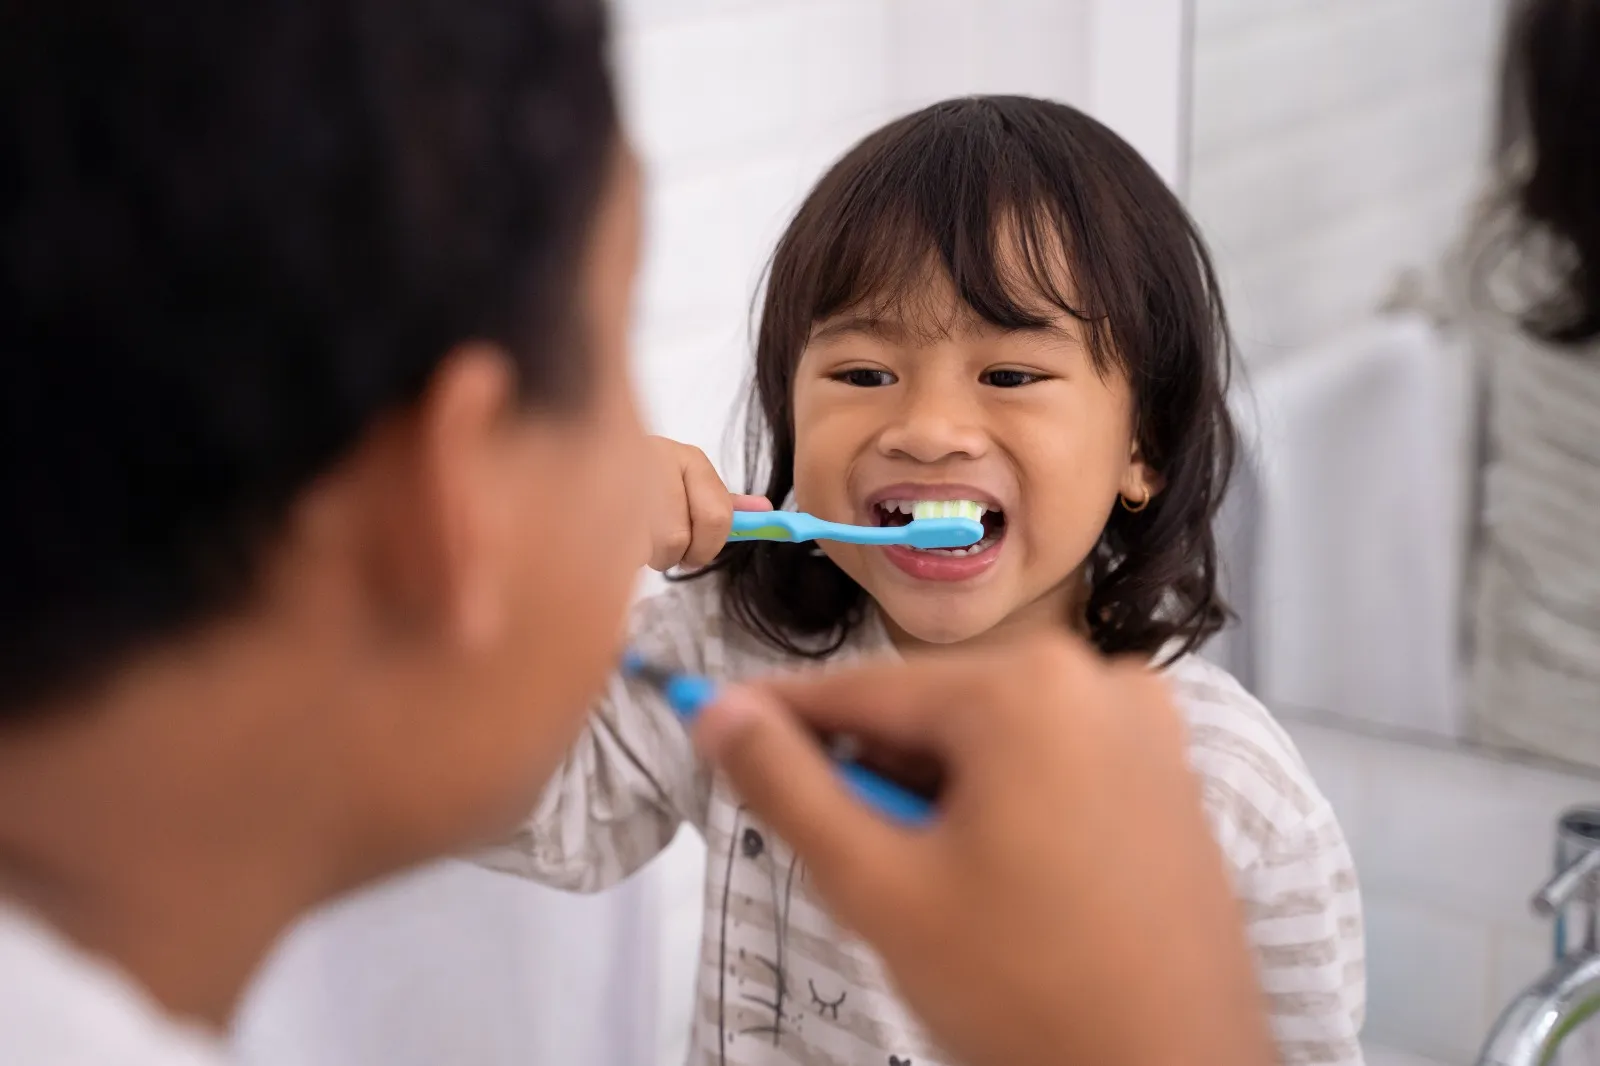 8 Dental Hygiene Tips for Kids in Singapore